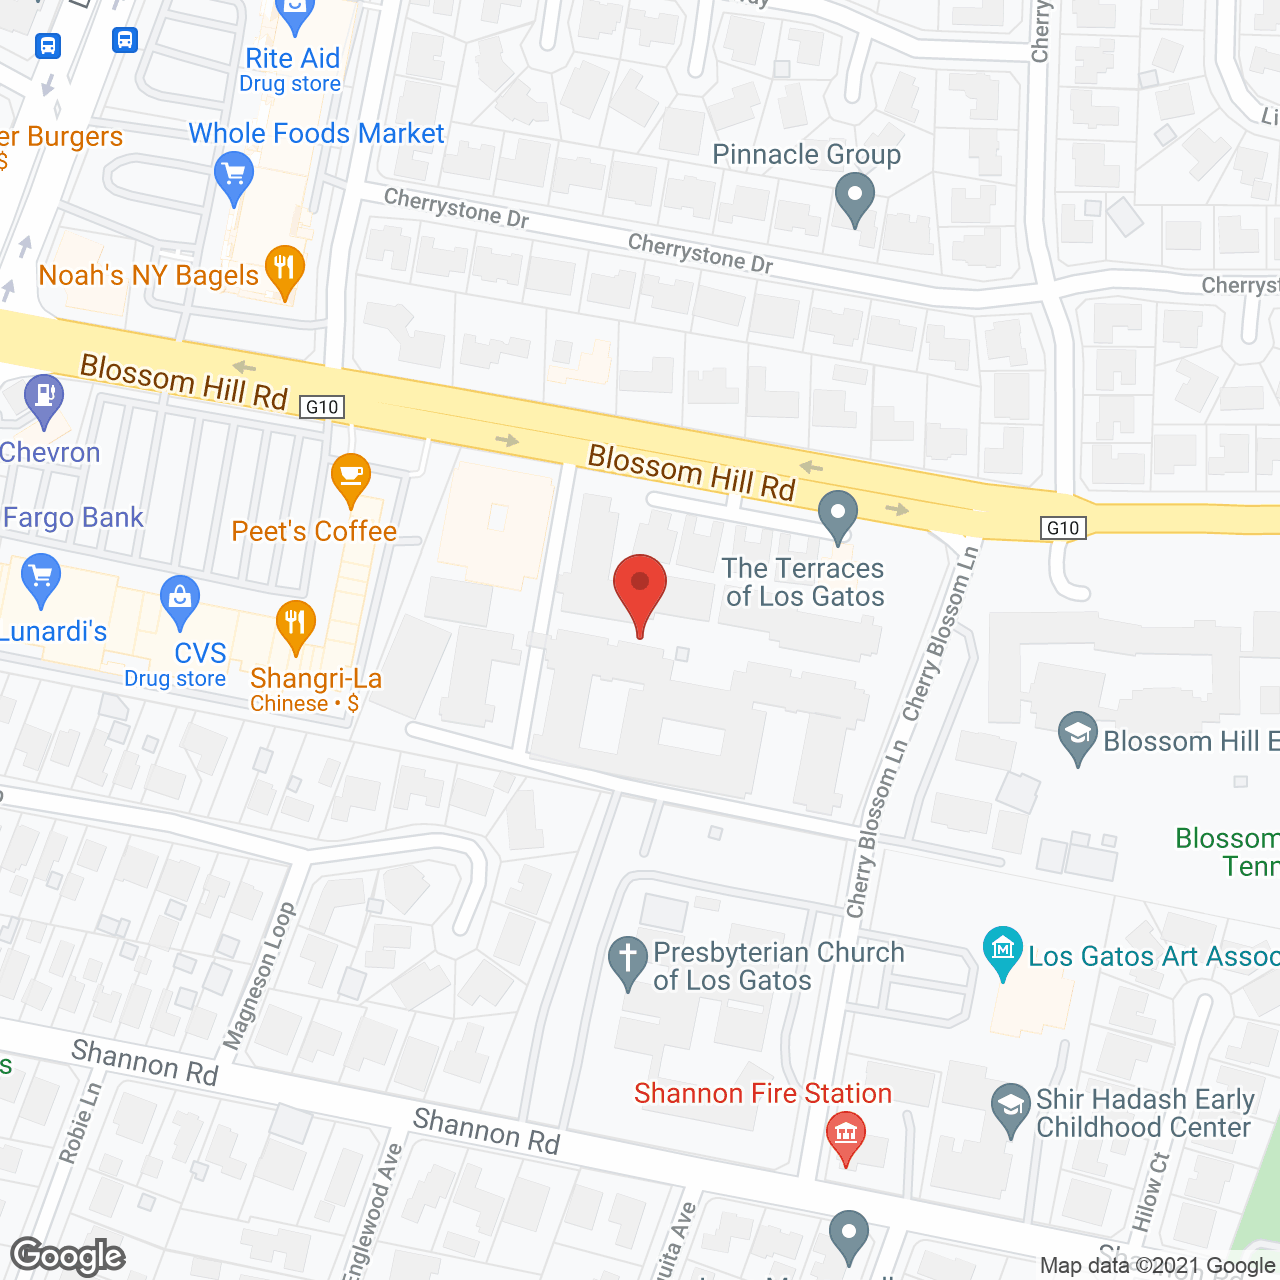 Terraces of Los Gatos in google map